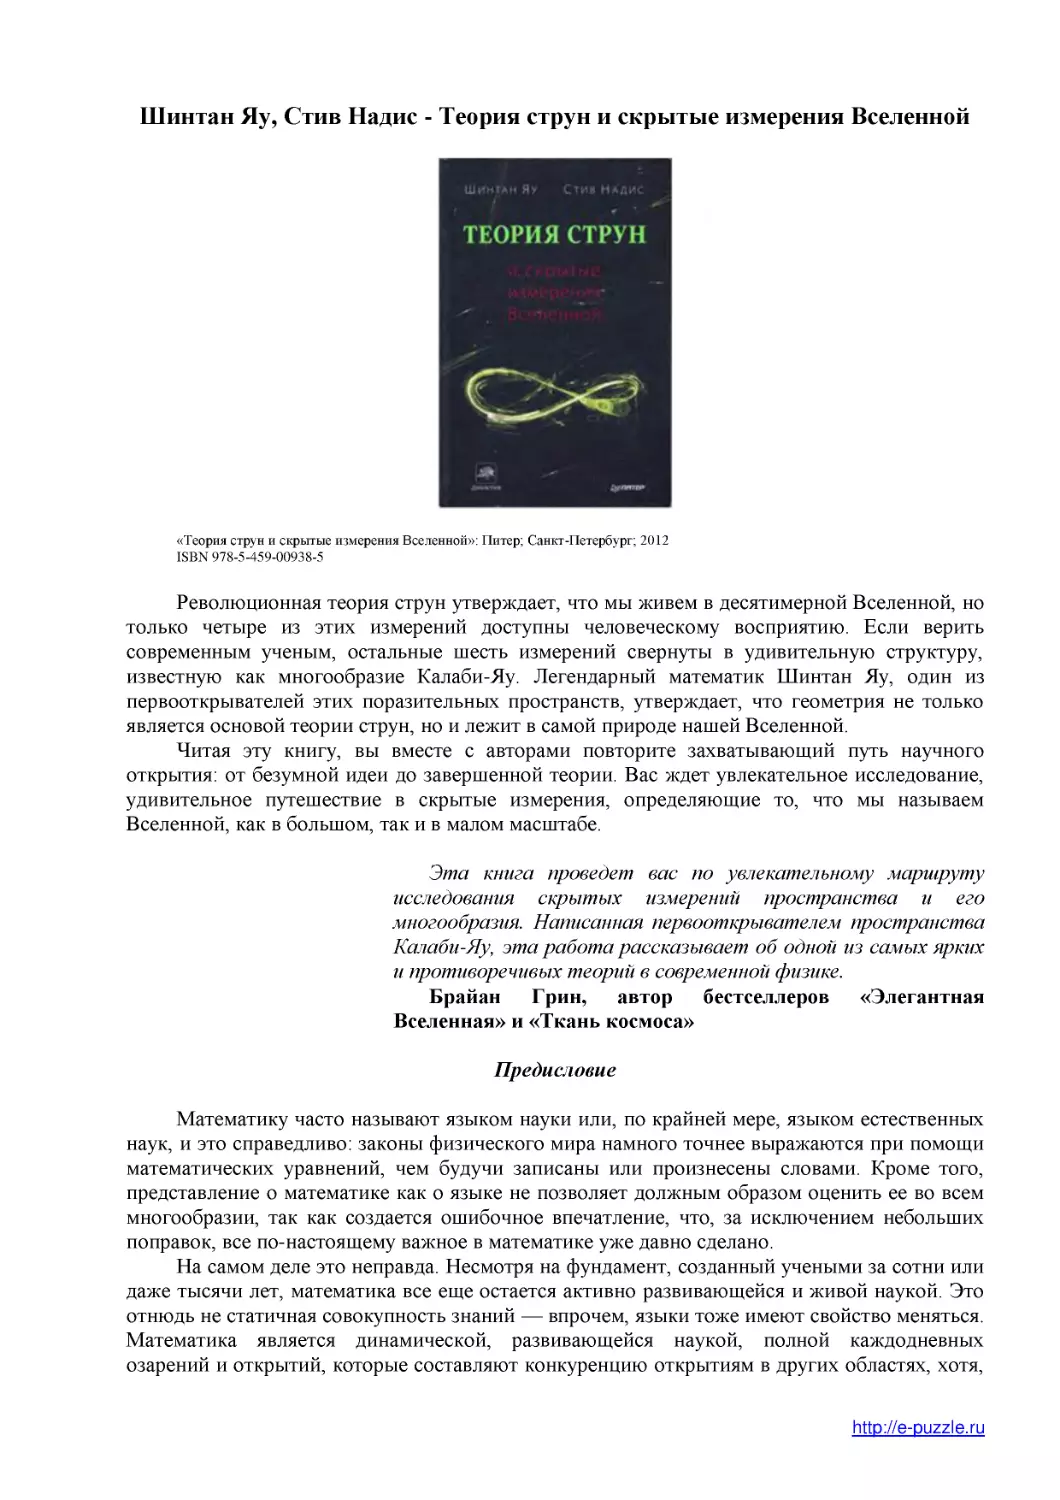 Шинтан Яу, Стив Надис - Теория струн и скрытые измерения Вселенной
Предисловие